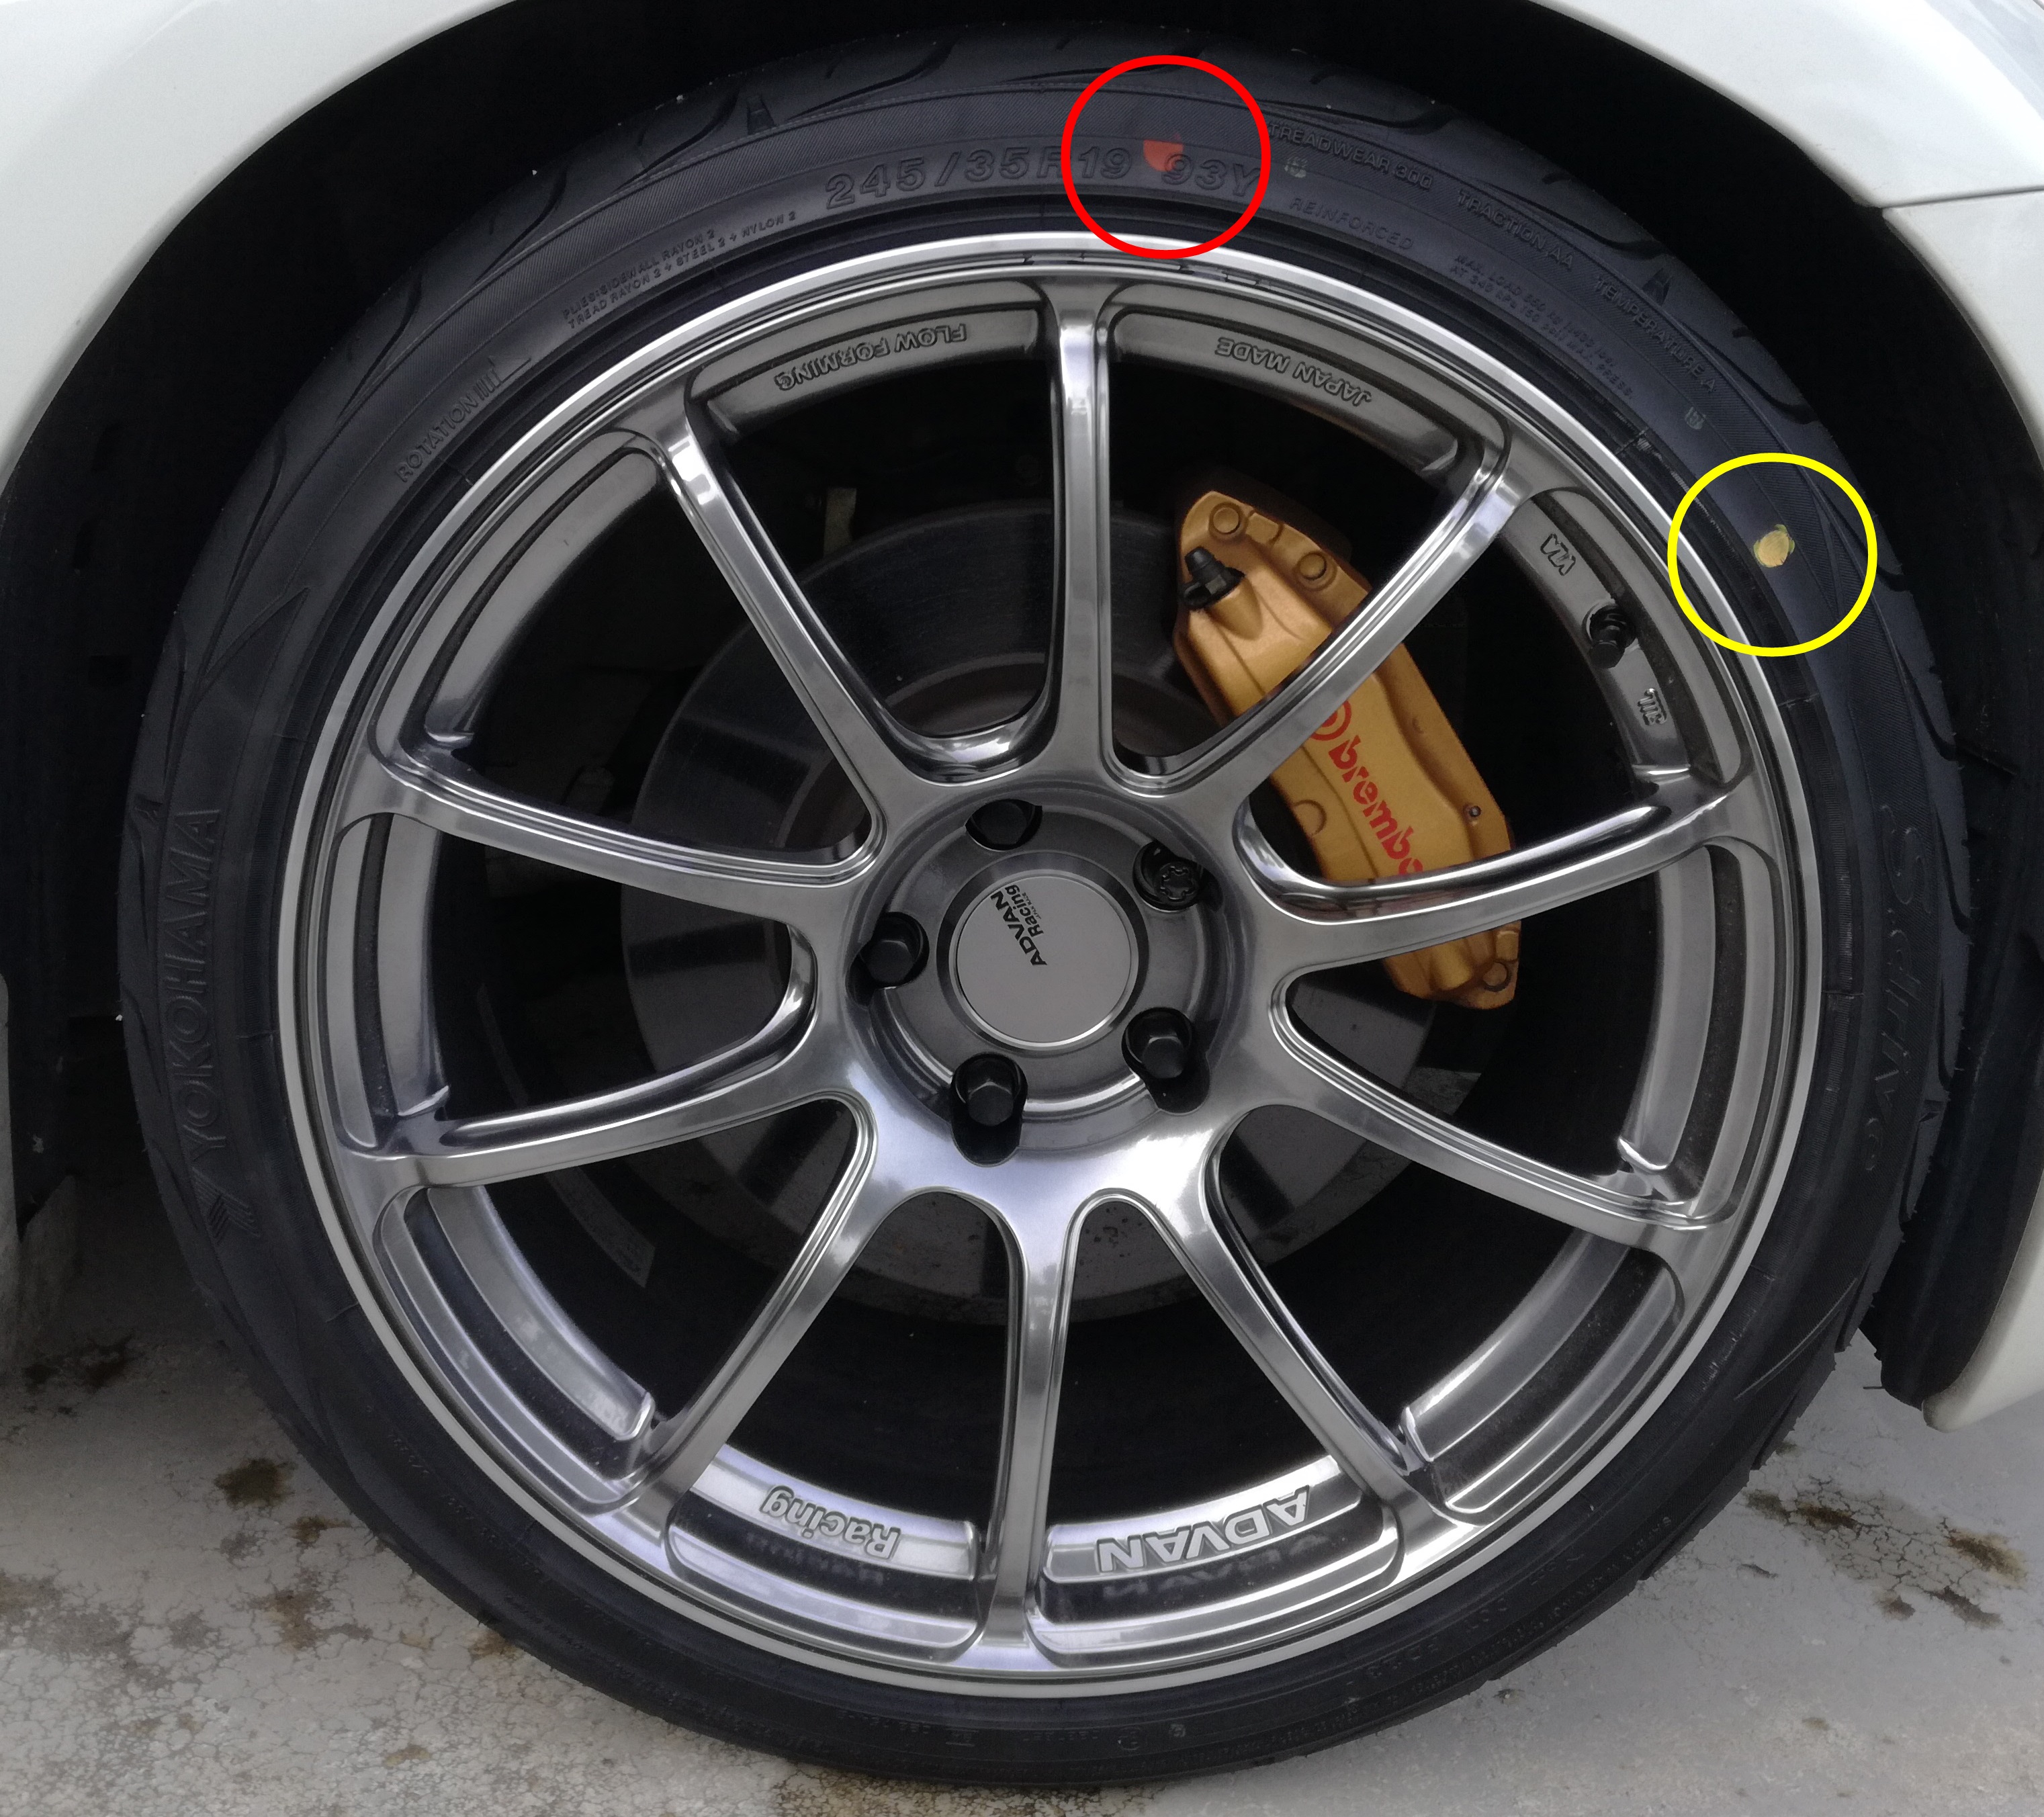 新品タイヤにある赤丸と黄丸の意味は マークを消す方法は